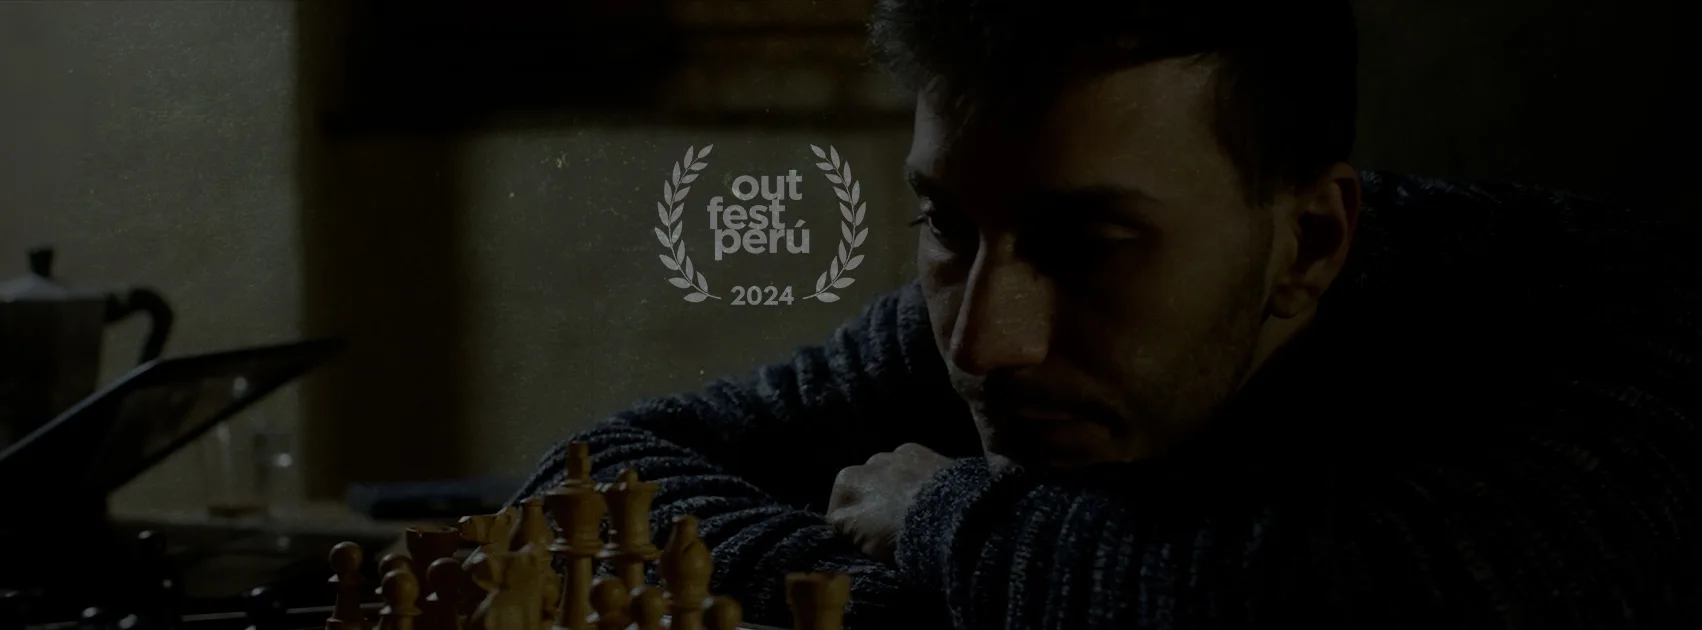 Il cortometraggio "Arrocco" di Federico Yang è nella selezione del 21° OutfestPerù Film Festival